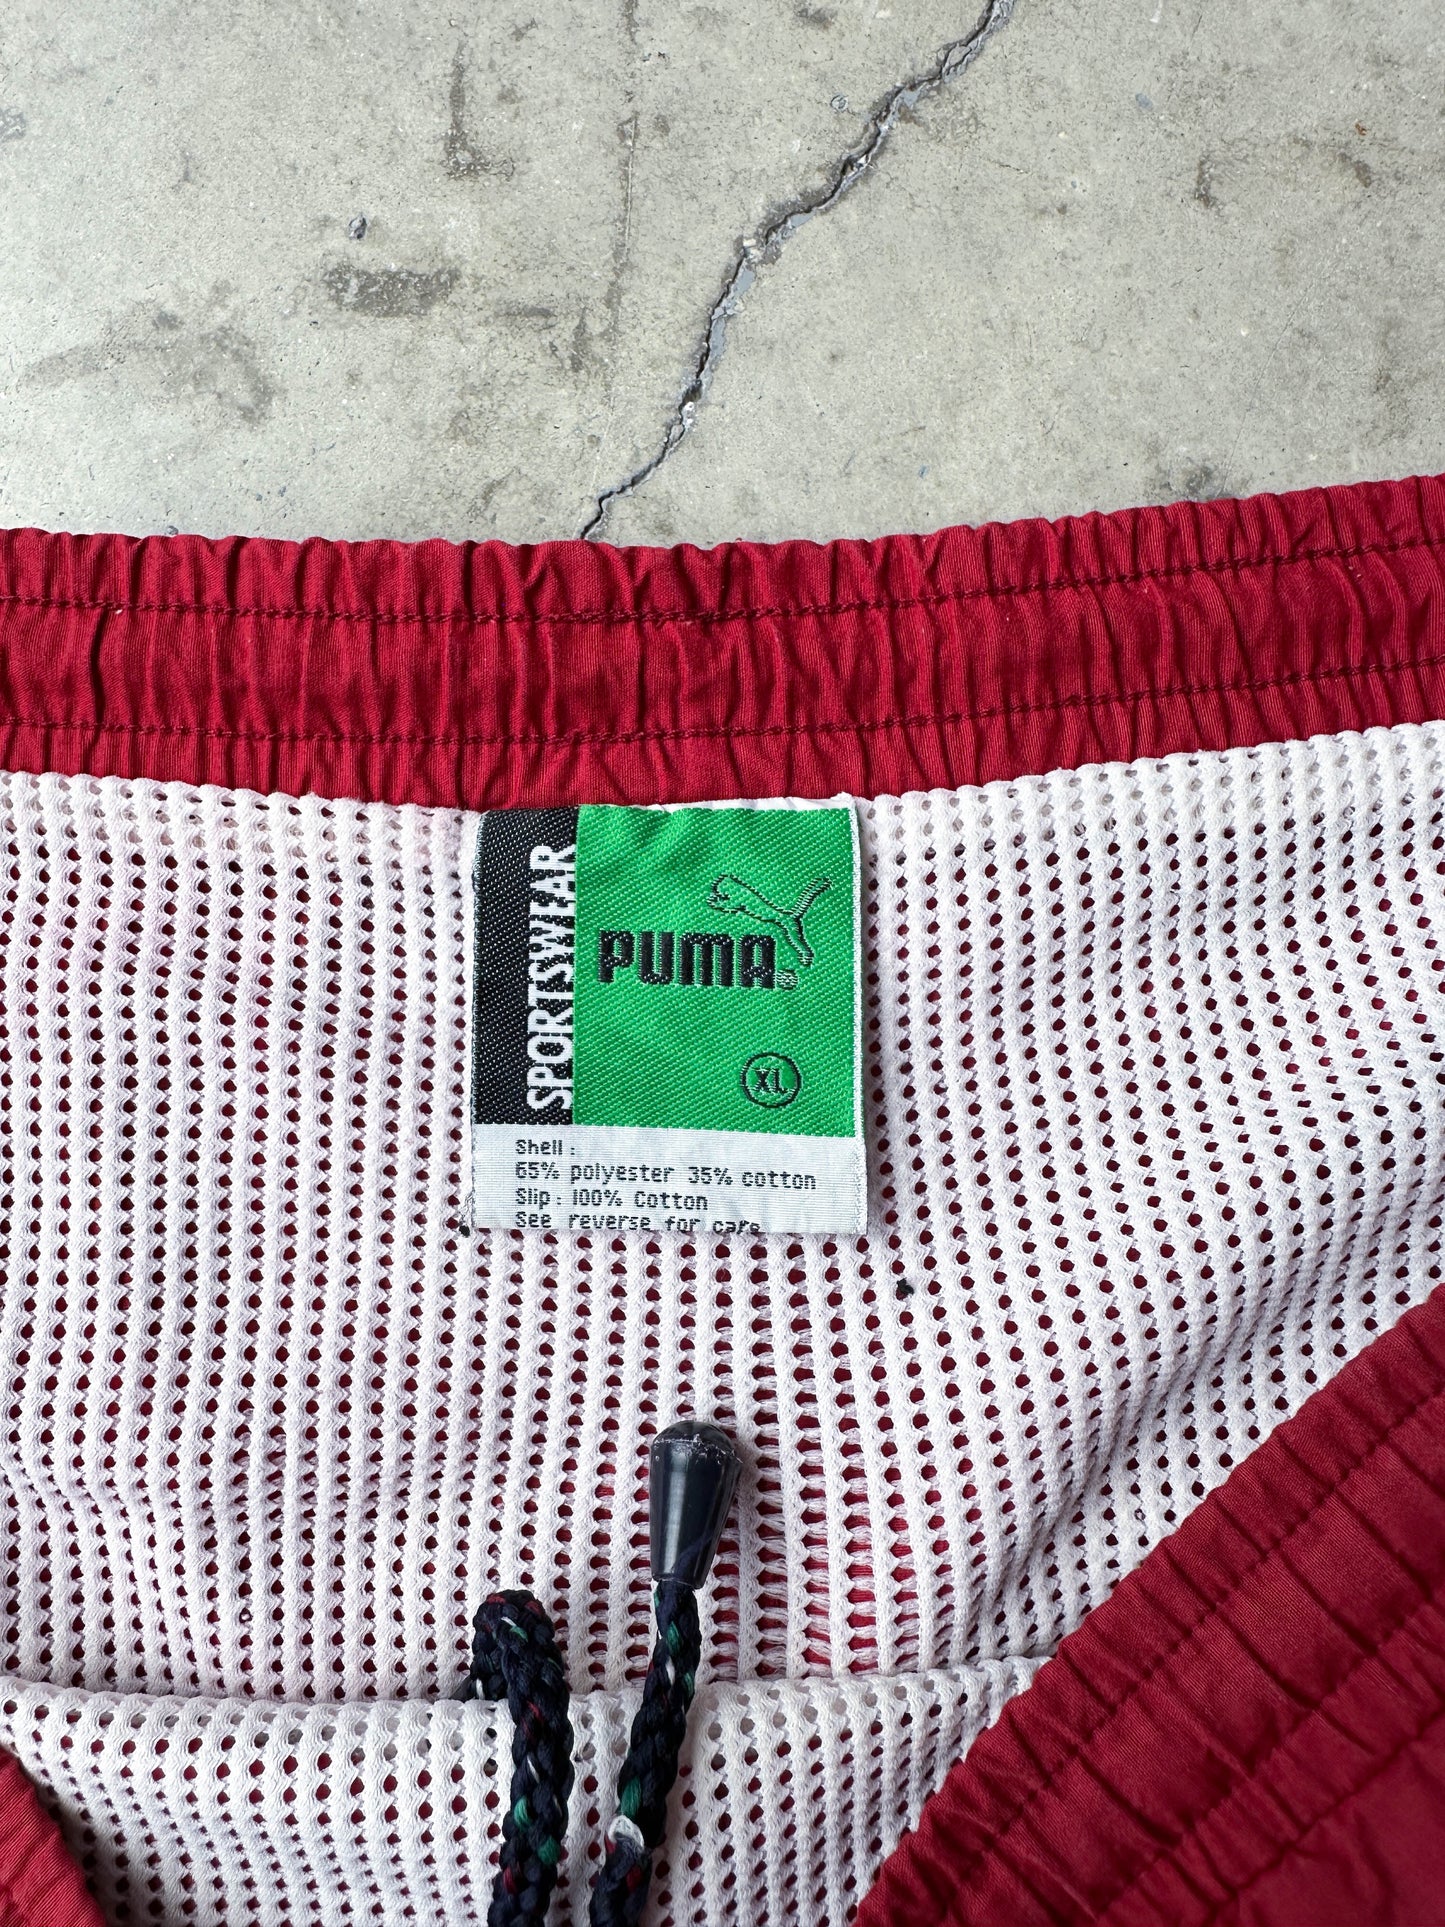 Vintage 90s Puma swimsuit